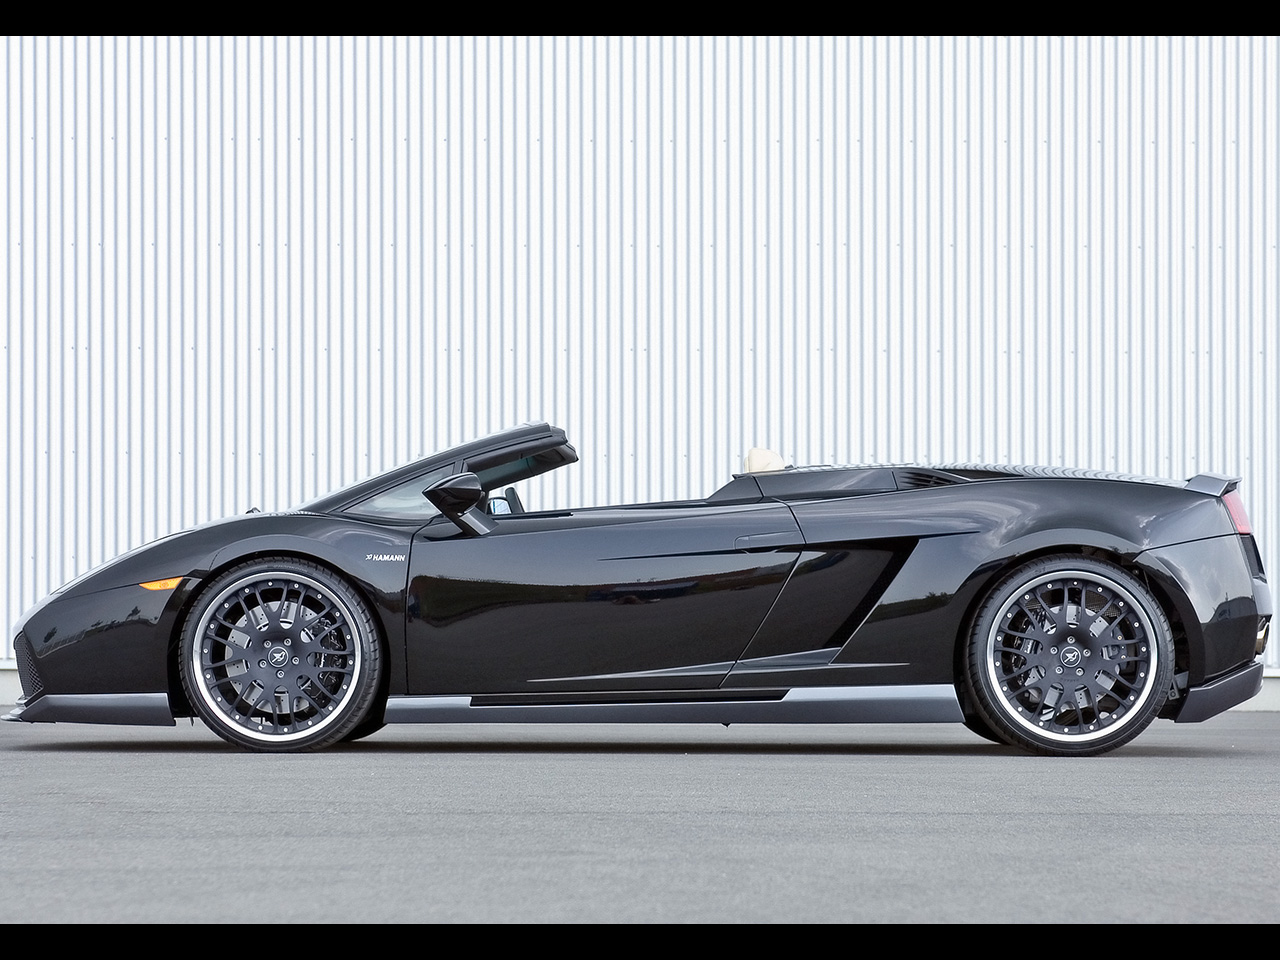 Lamborghini Gallordo Spyder